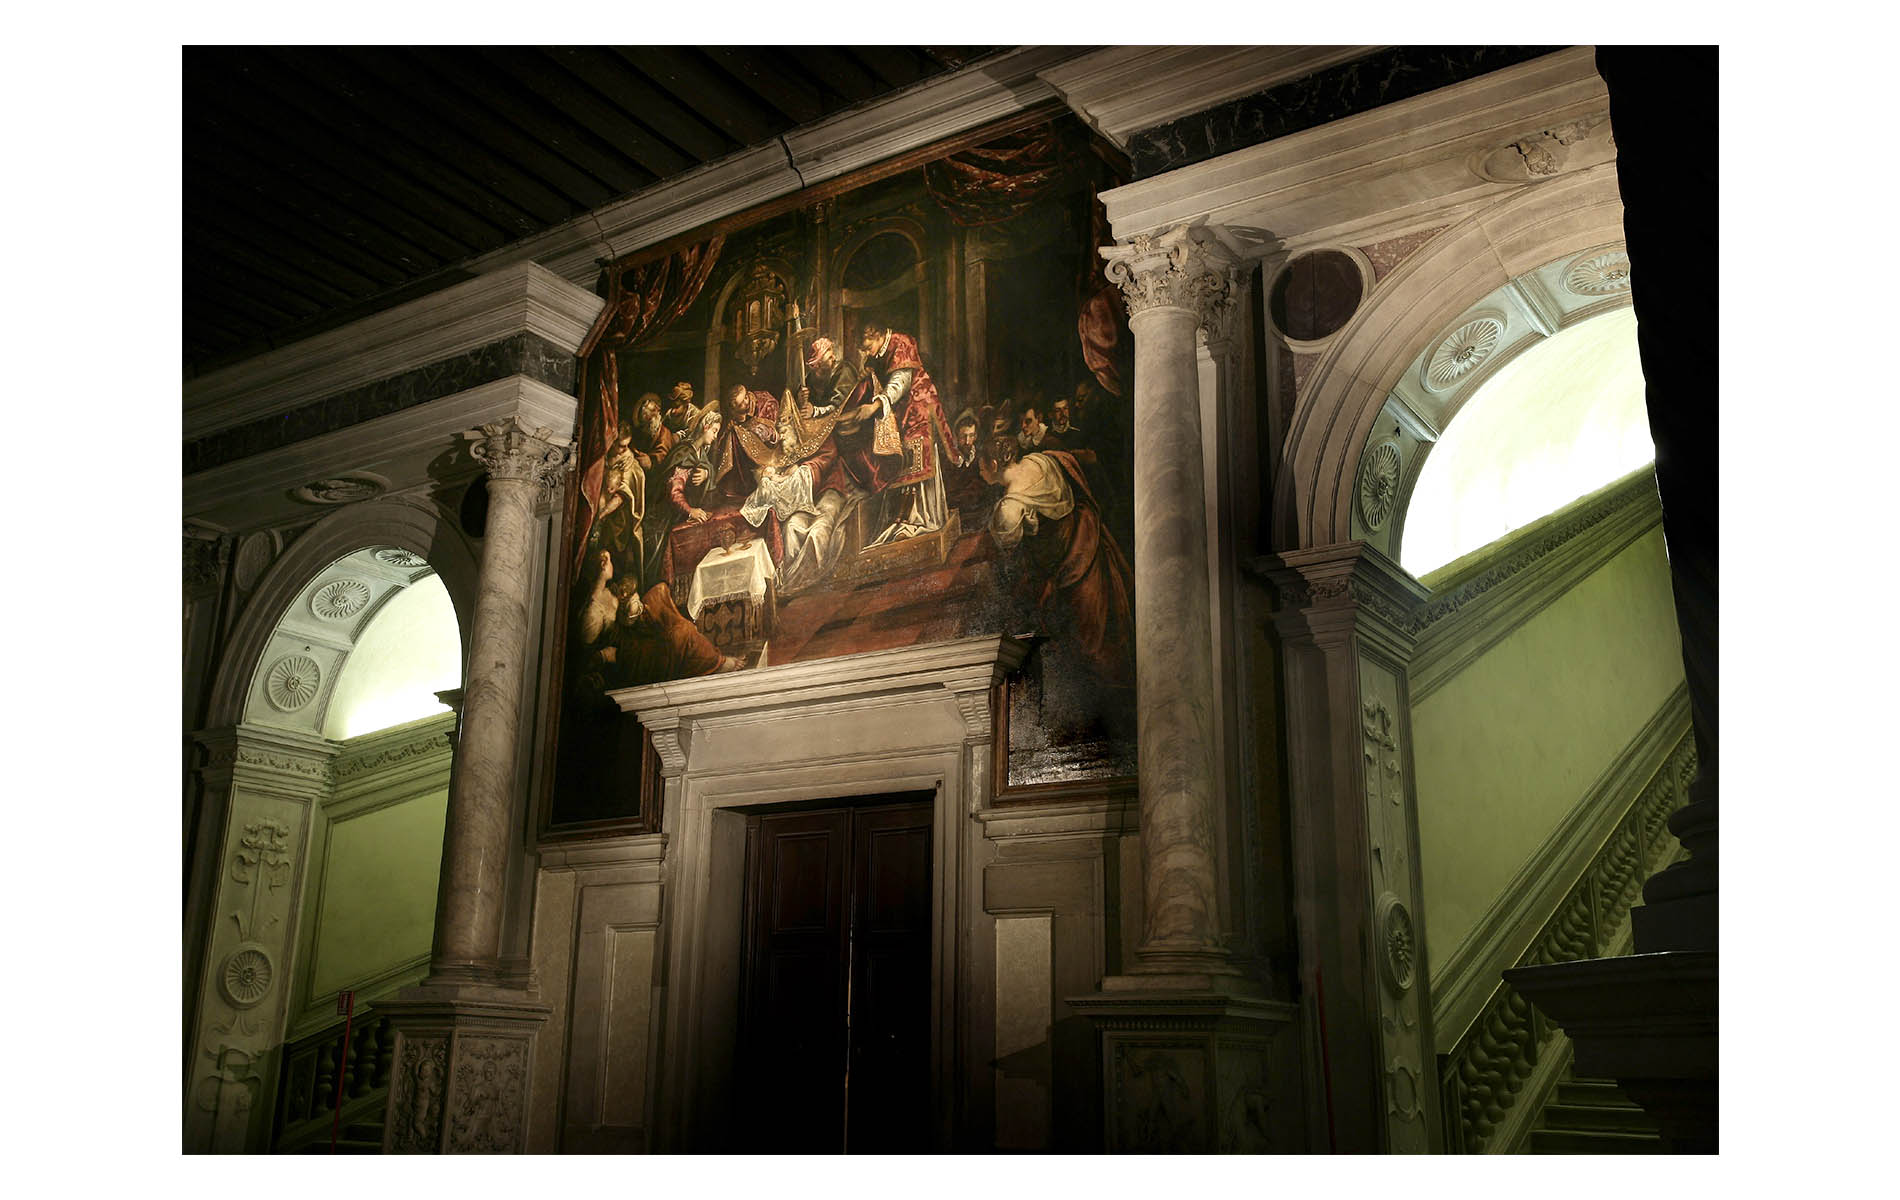 tintoretto,venecia,venice.barroco,baroque,Scuola Grande di San Rocco